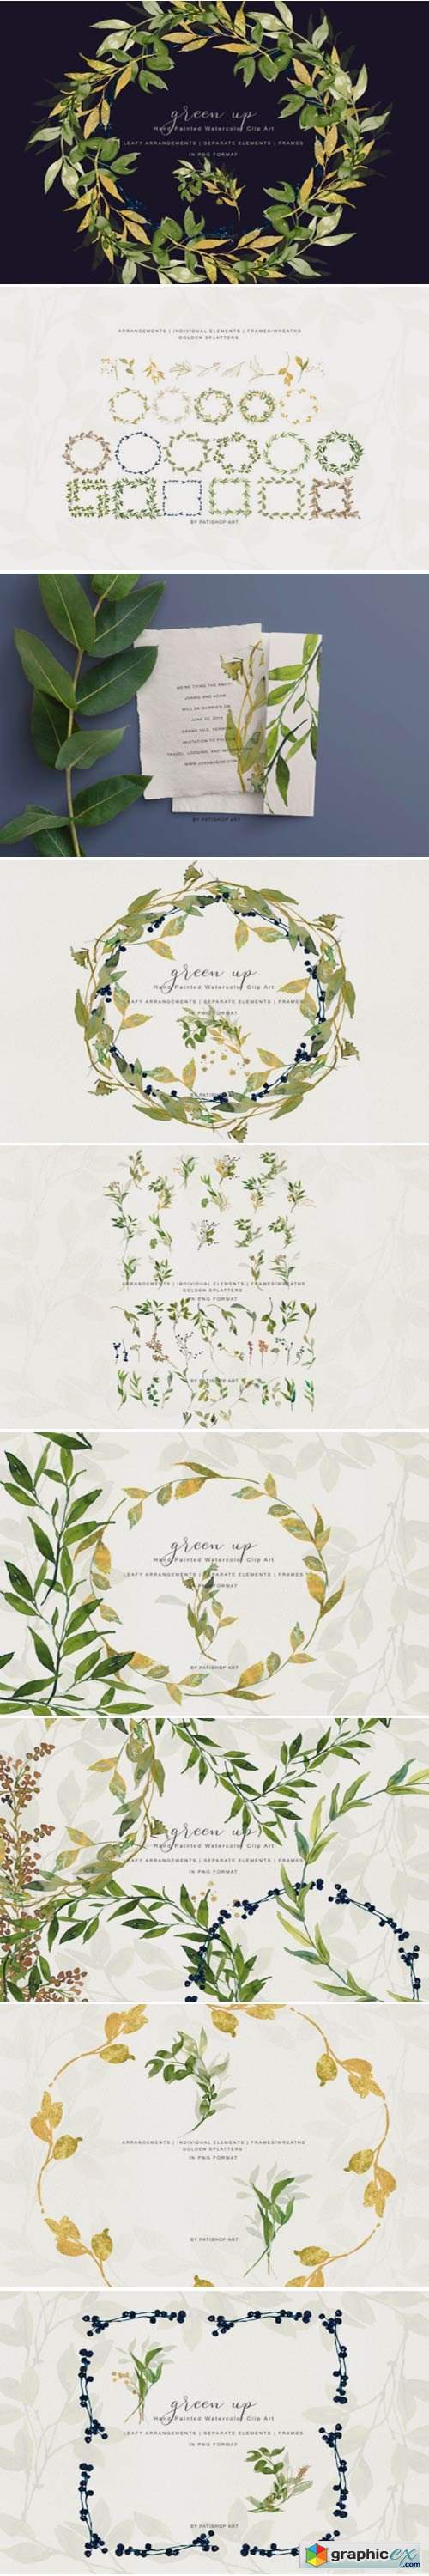 Watercolor Leafy Arrangements & Frames